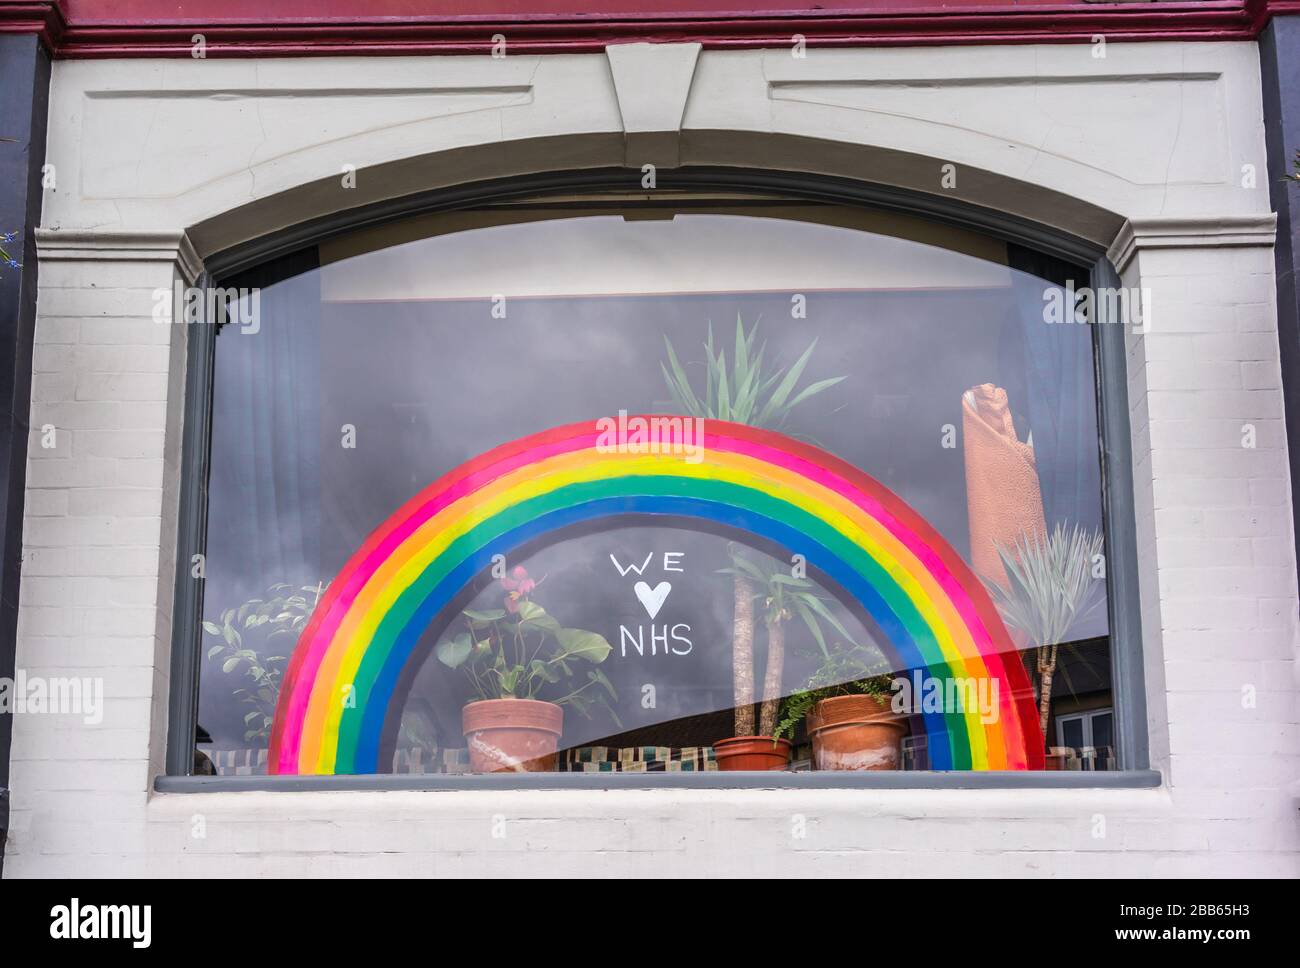 Una ventana con un arco iris y la cita "nos encanta NHS" que simboliza la esperanza durante la pandemia de Coronavirus en marzo de 2020, Southampton, Inglaterra, Reino Unido Foto de stock